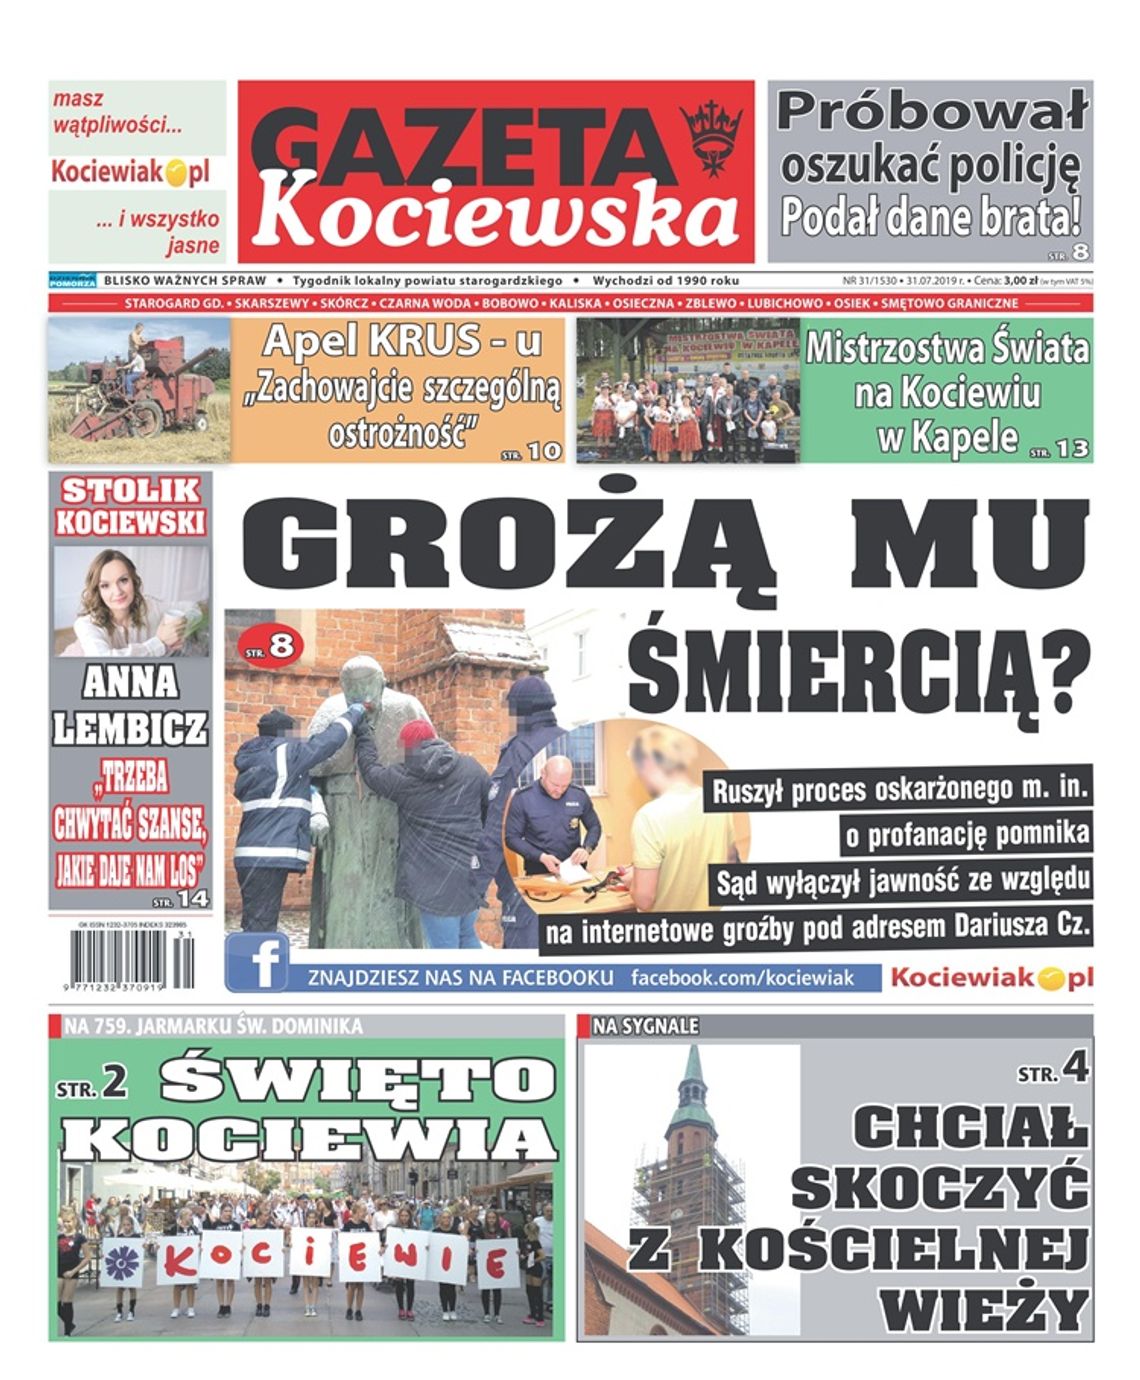 Nowa Gazeta Kociewska już w kioskach